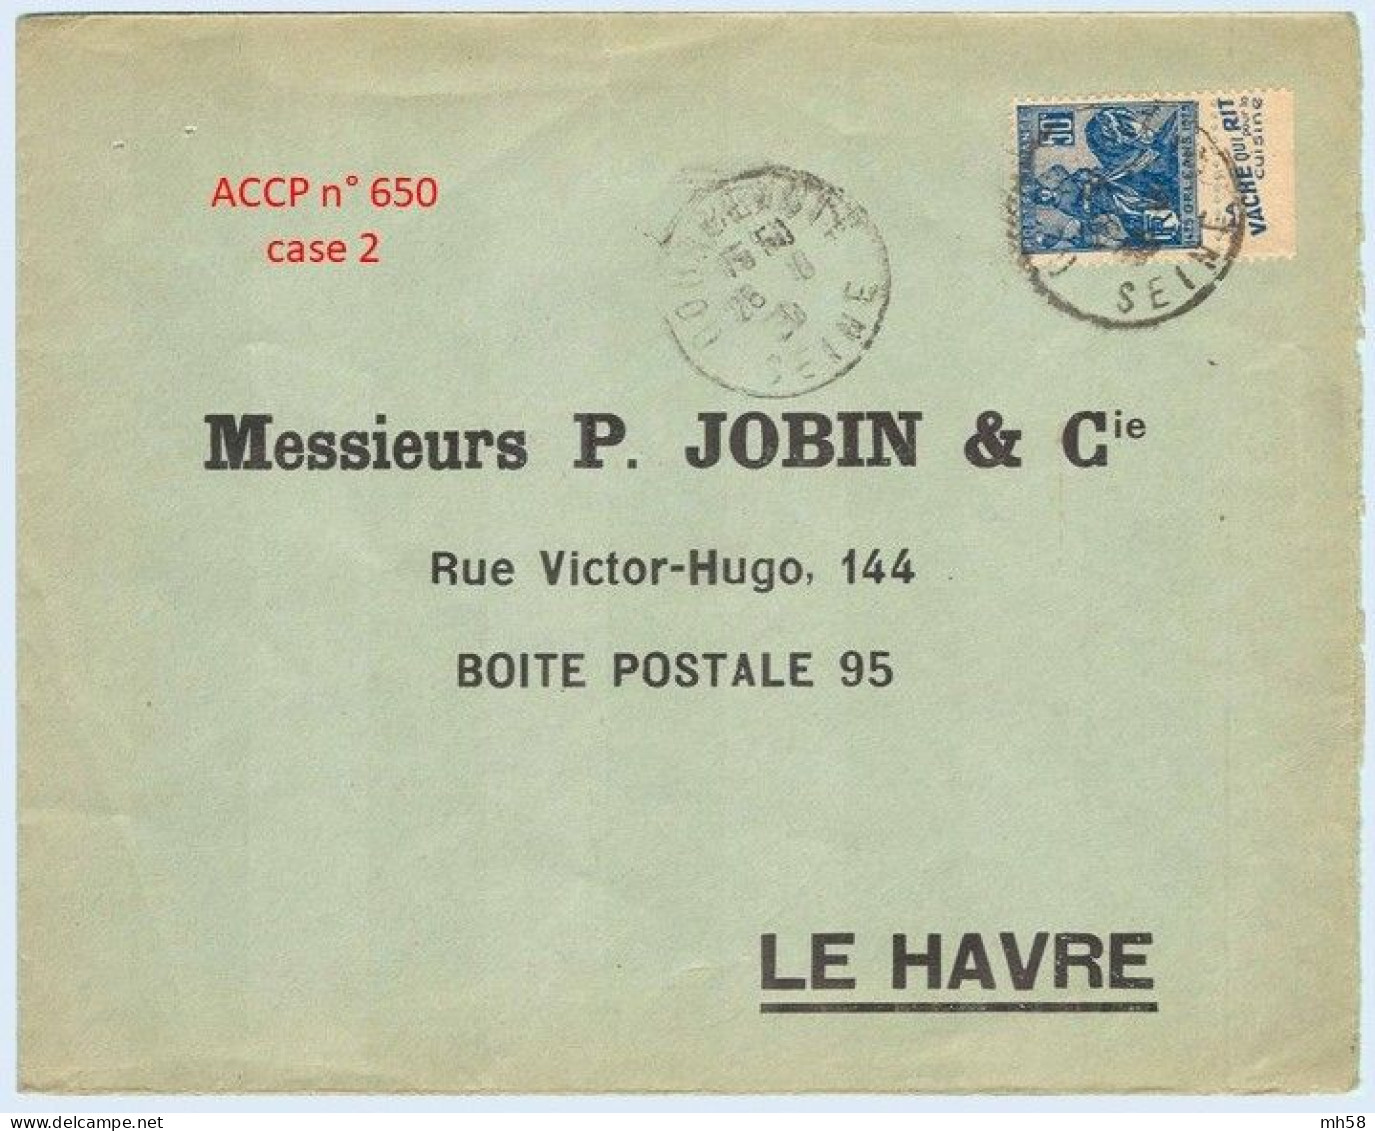 FRANCE - Lettre Avec Pub De Carnet : Vache Qui Rit Pour La Cuisine - N° 257 50c Jeanne D'Arc Type I - Briefe U. Dokumente